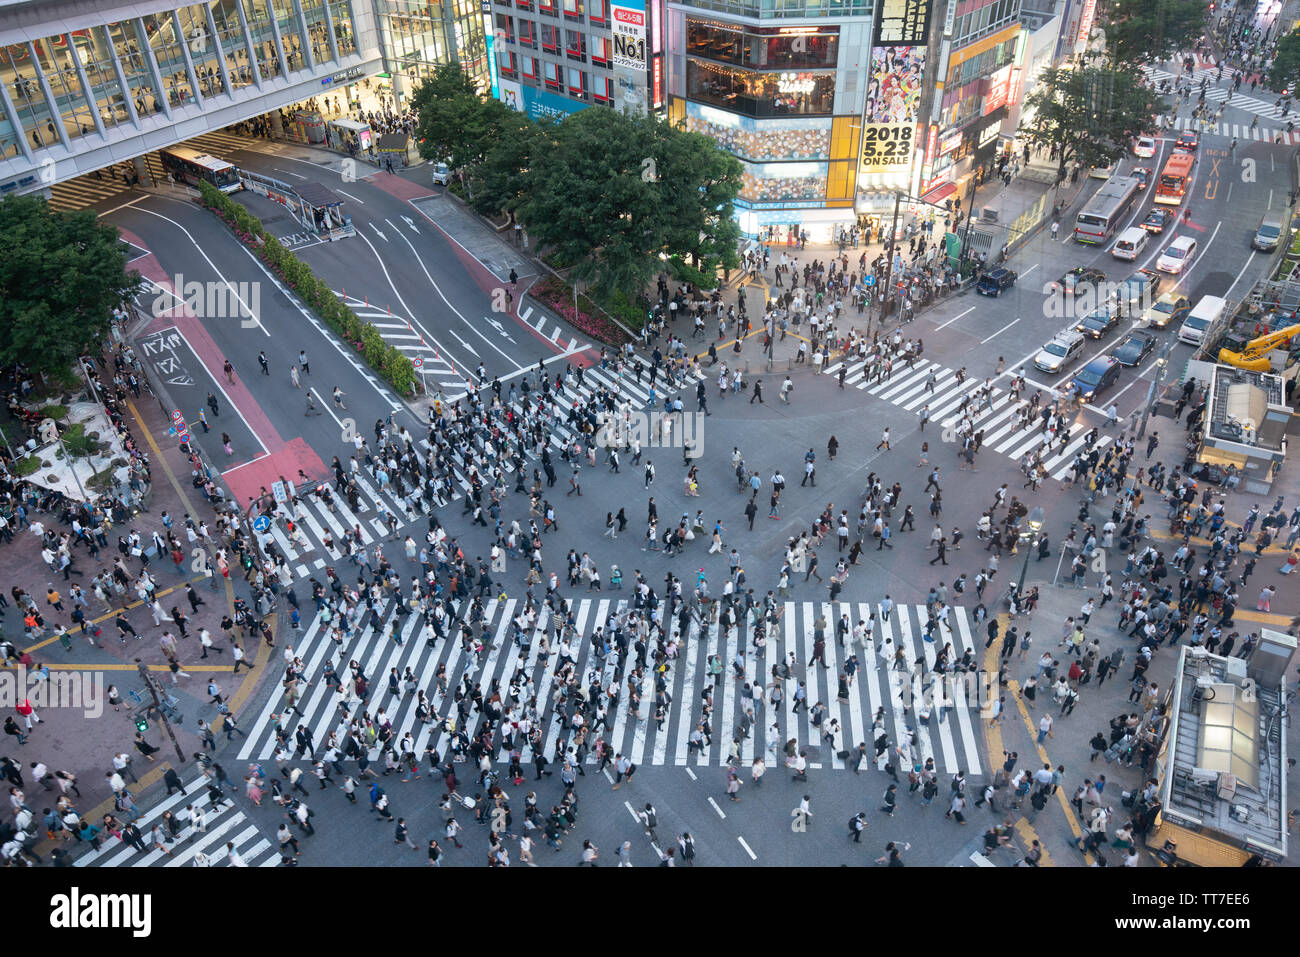 TOKYO, Japan - 16. MAI 2018: Fußgänger an zebrastreifen Stadtteil Shibuya in Tokio, Japan. Shibuya Crossing ist einer der verkehrsreichsten Fussgängerstreifen in der Welt Stockfoto